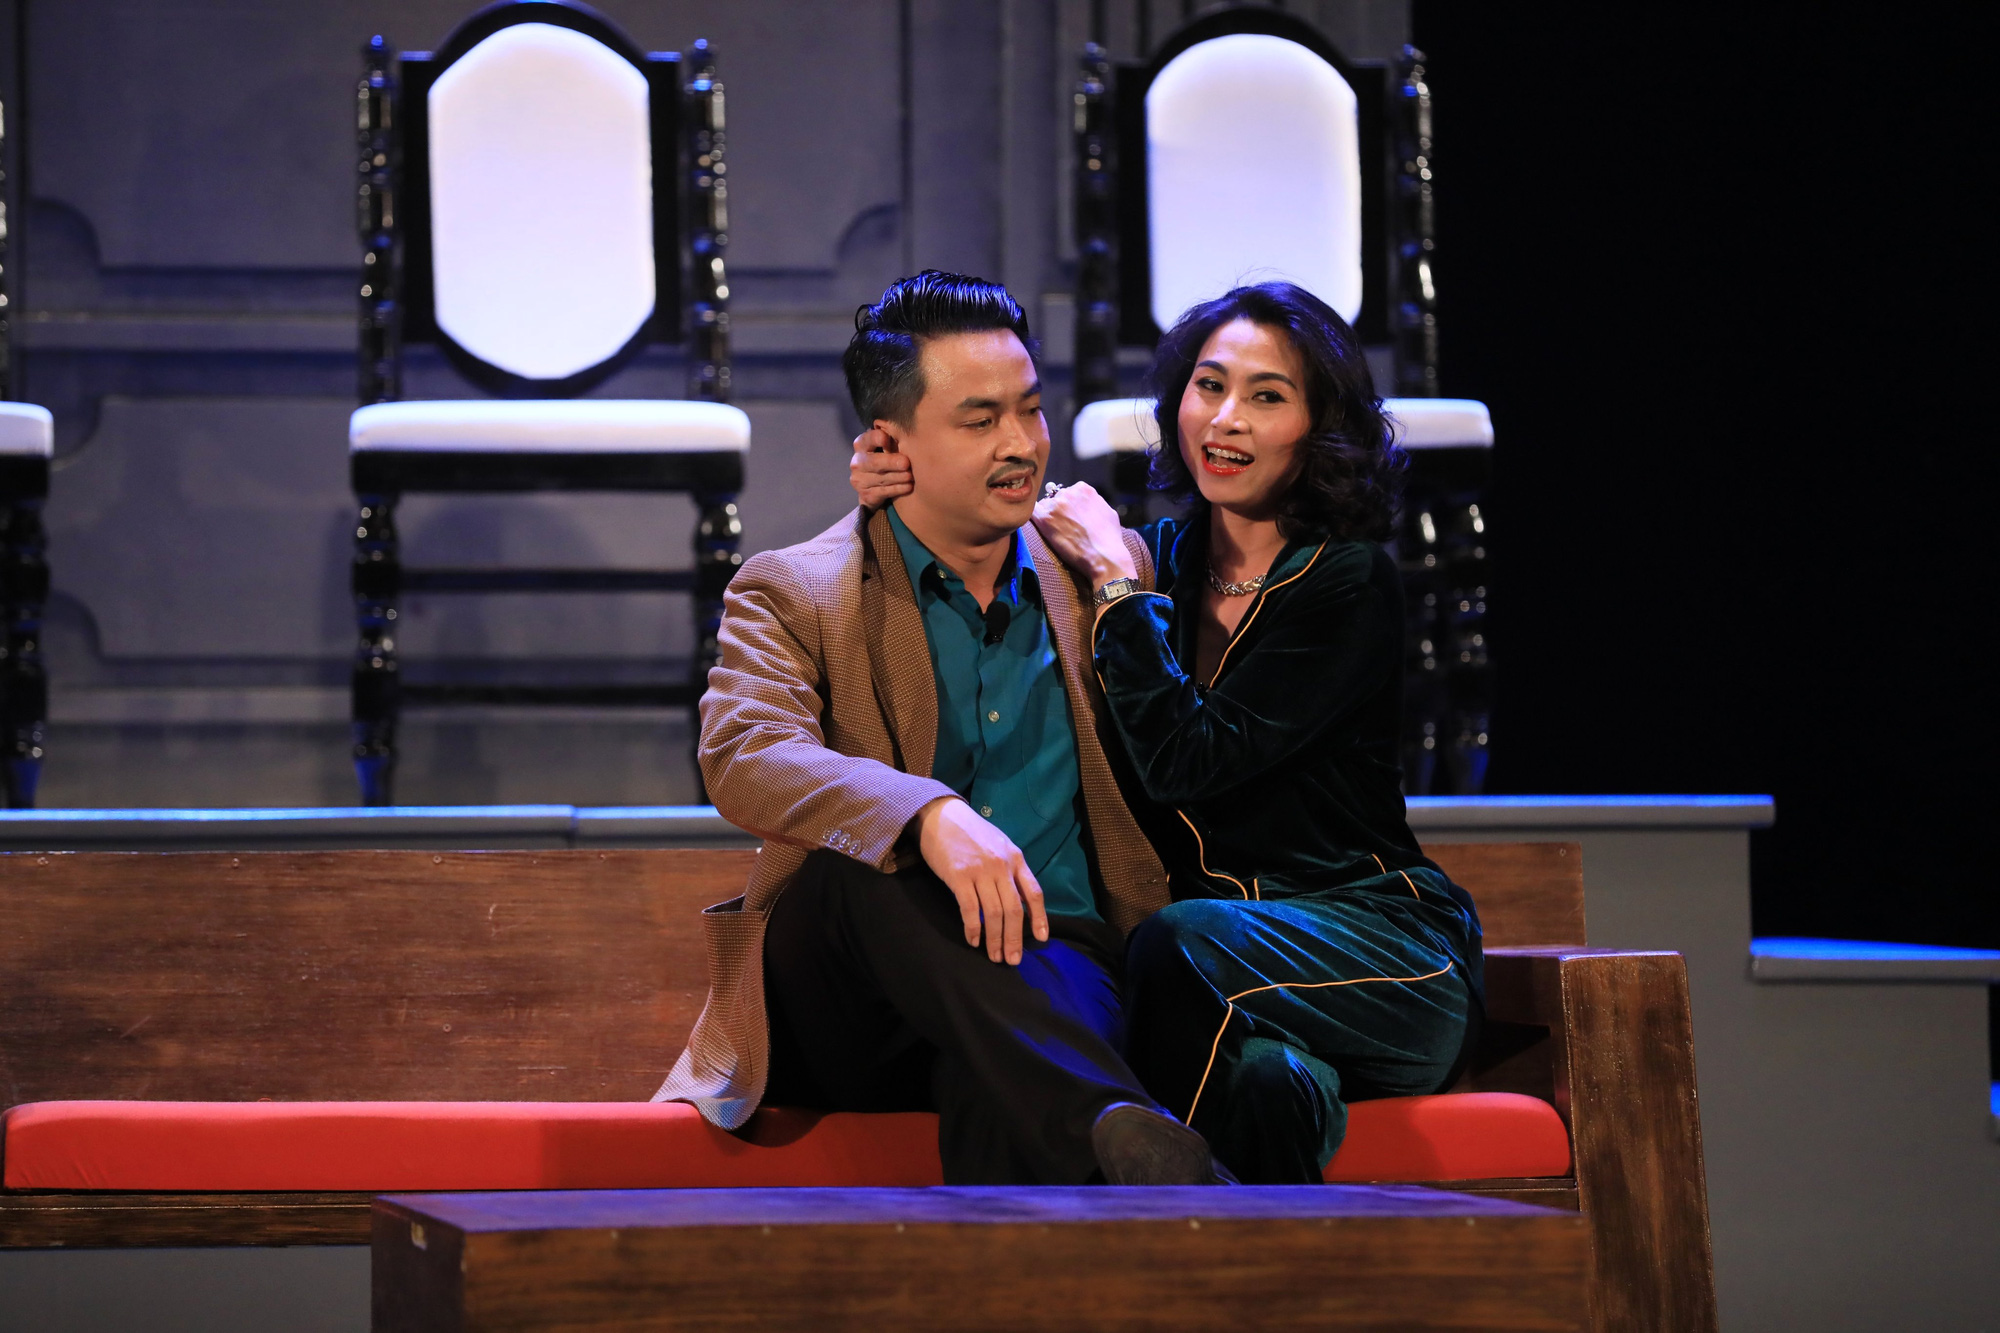 Công diễn vở kịch cuối cùng trong sự nghiệp lừng lẫy của nhà viết kịch Lưu Quang Vũ - Ảnh 11.